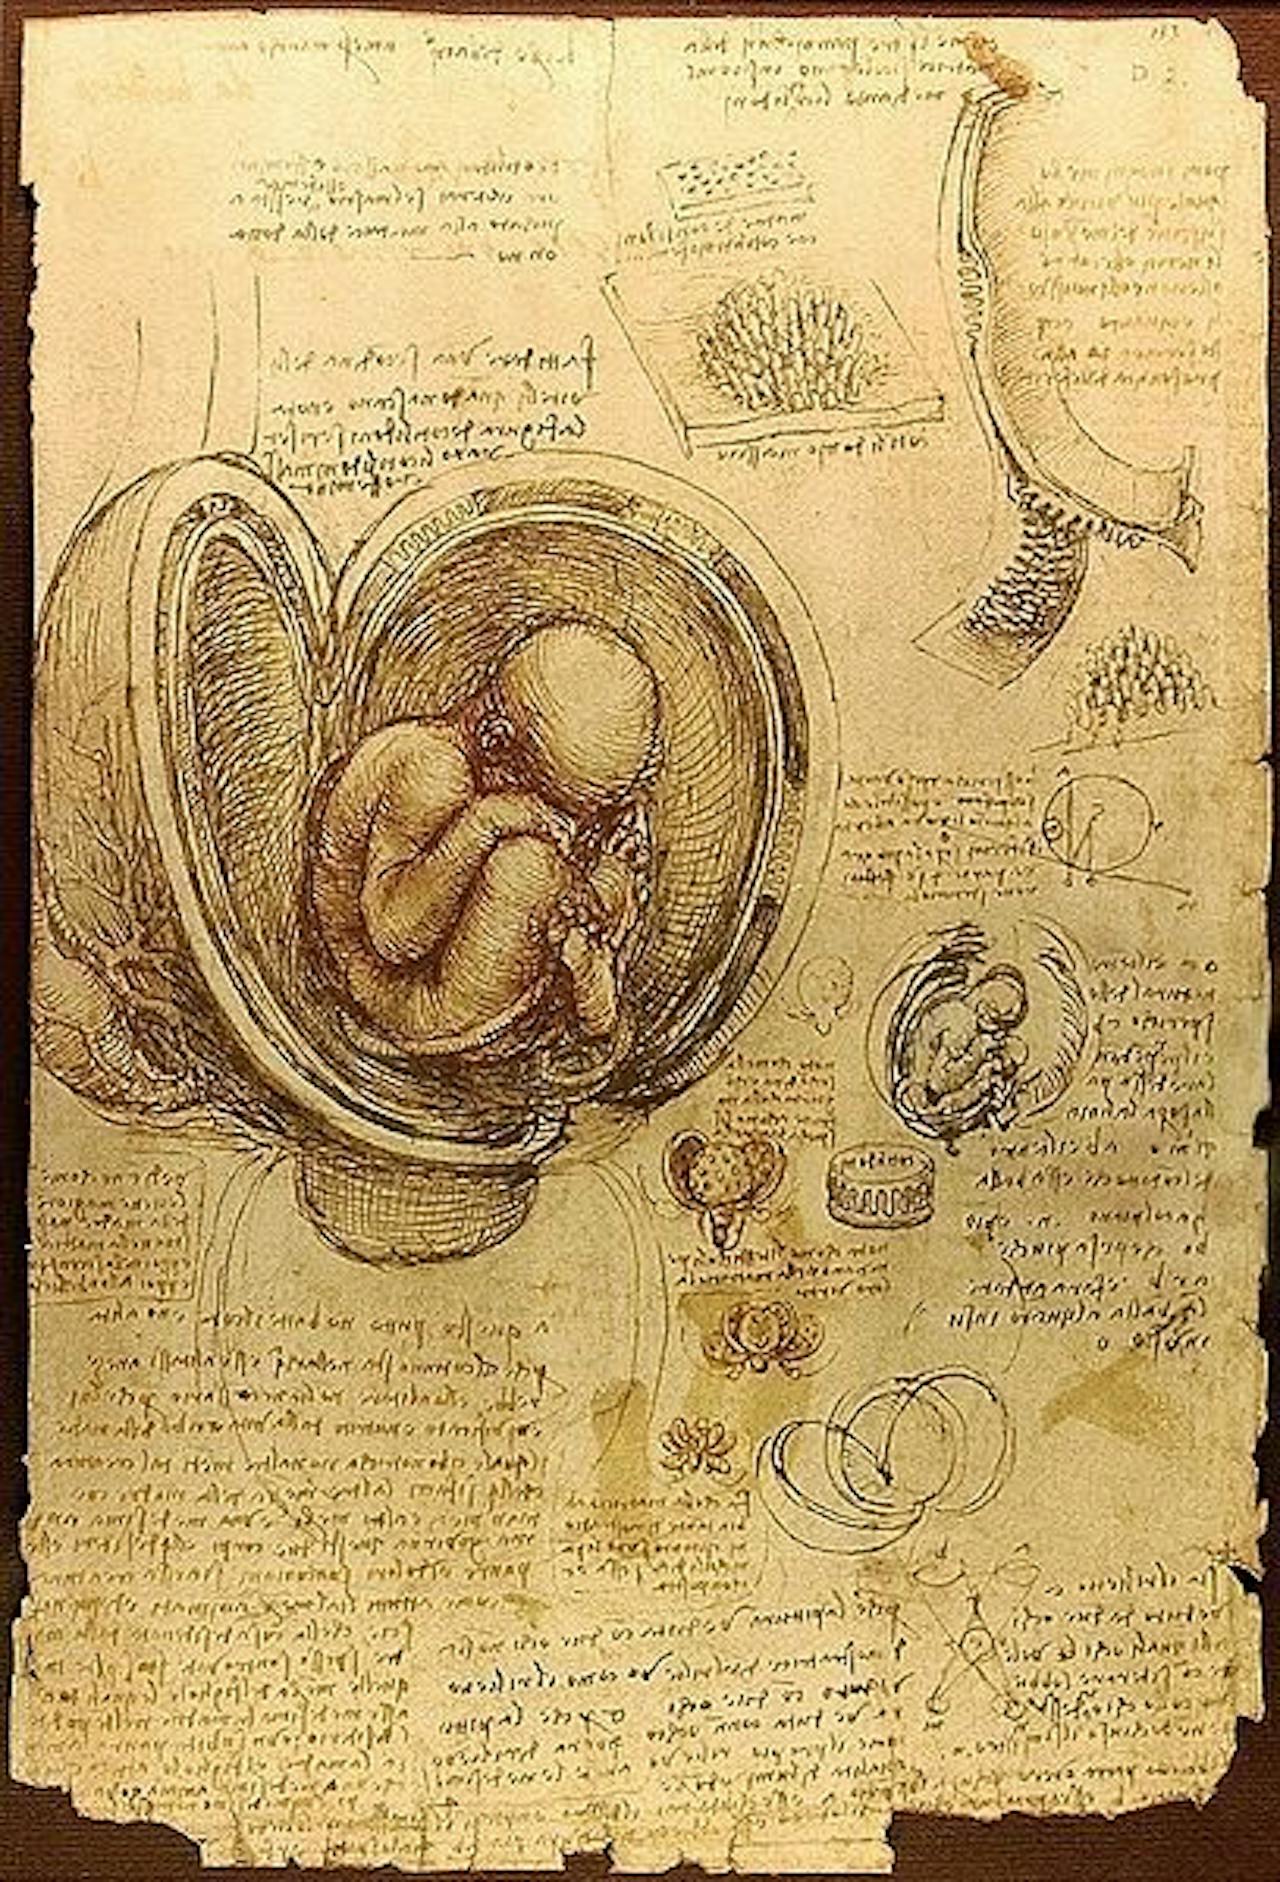 Een tekening van Leonardo da Vinci van een foetus in een baarmoeder.